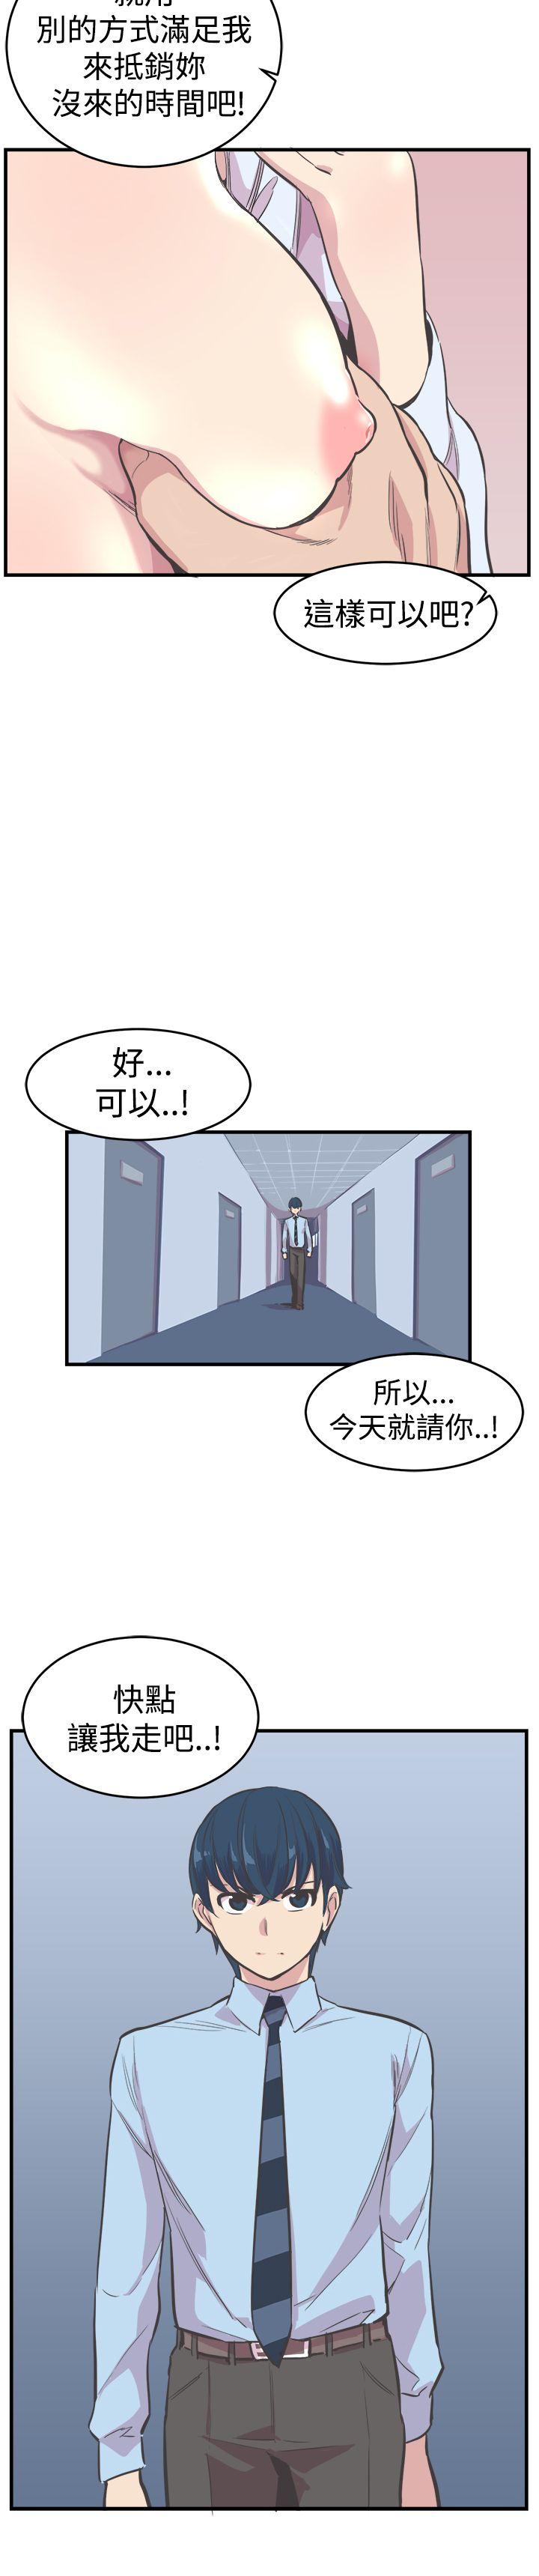 青春男女(完结)  第20话 漫画图片3.jpg